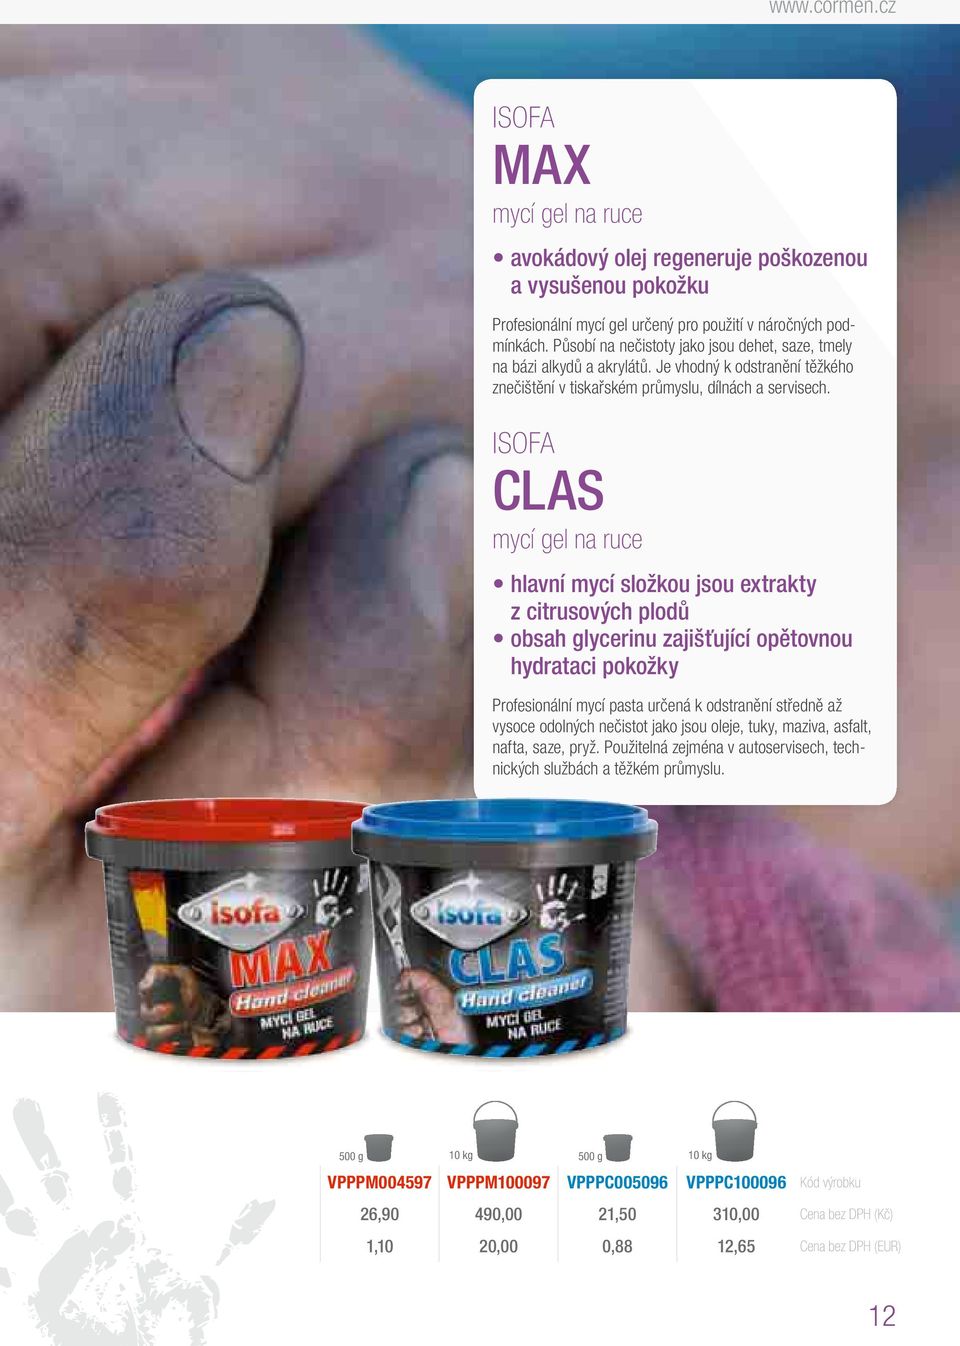 ISOFA CLAS mycí gel ruce hlavní mycí složkou jsou extrakty z citrusových plodů obsah glycerinu zajišťující opětovnou hydrataci pokožky Profesionální mycí pasta určená k odstranění středně až vysoce